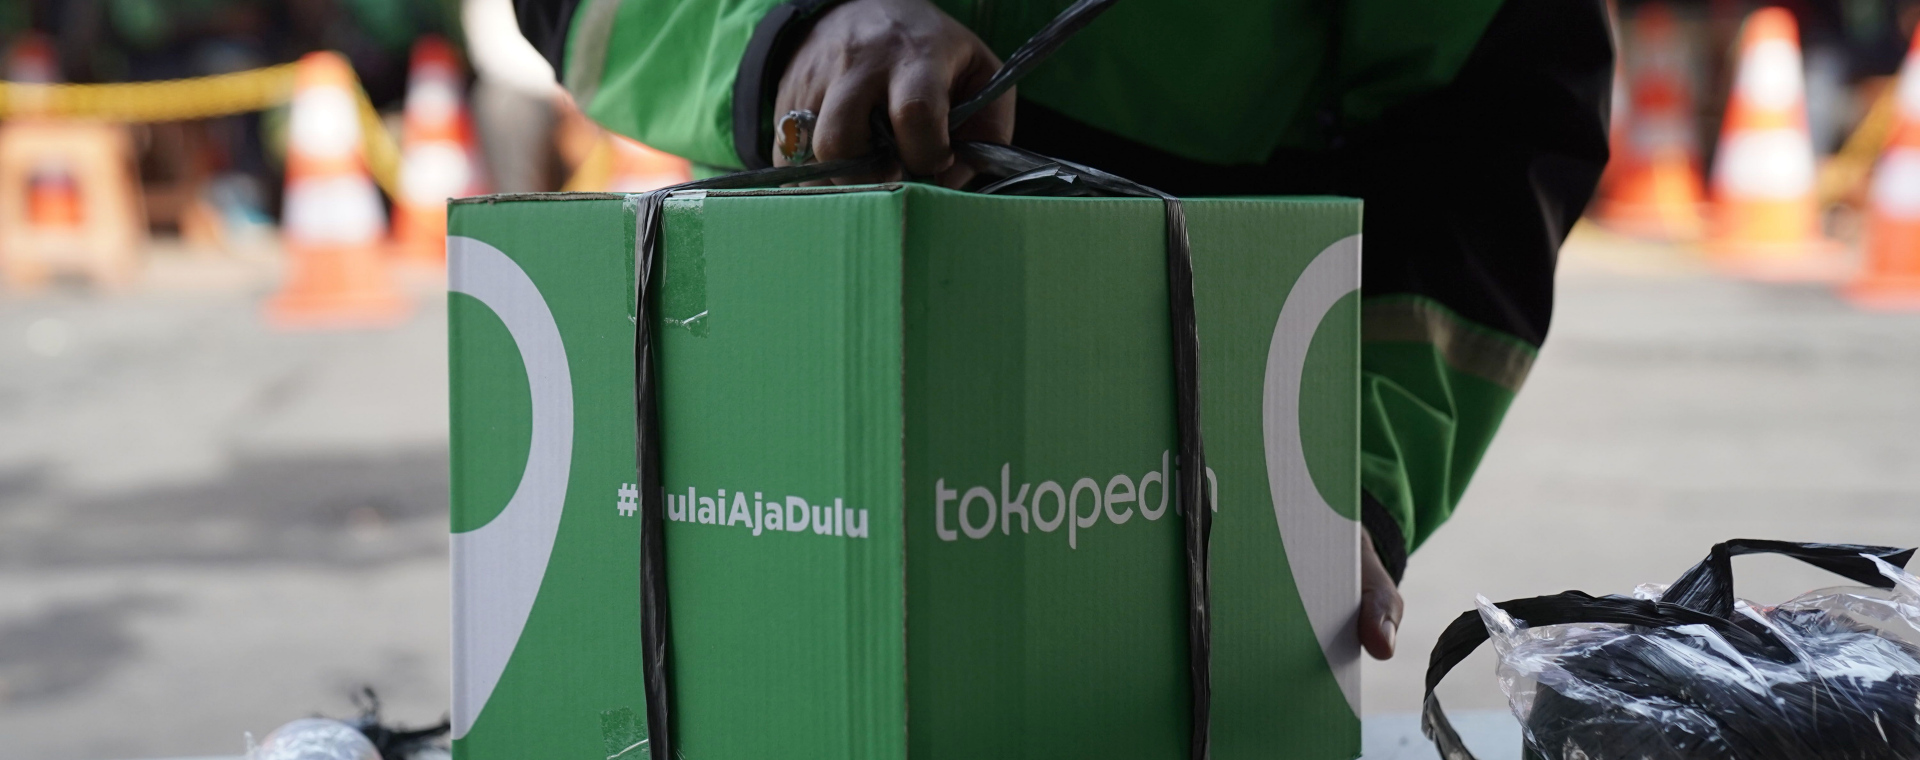 Pengemudi gojek mengambil paket barang yang dibeli dari Tokopedia di salah satu gudang Jakarta, Senin (24/5/2021). - Bloomberg/Dimas Ardian